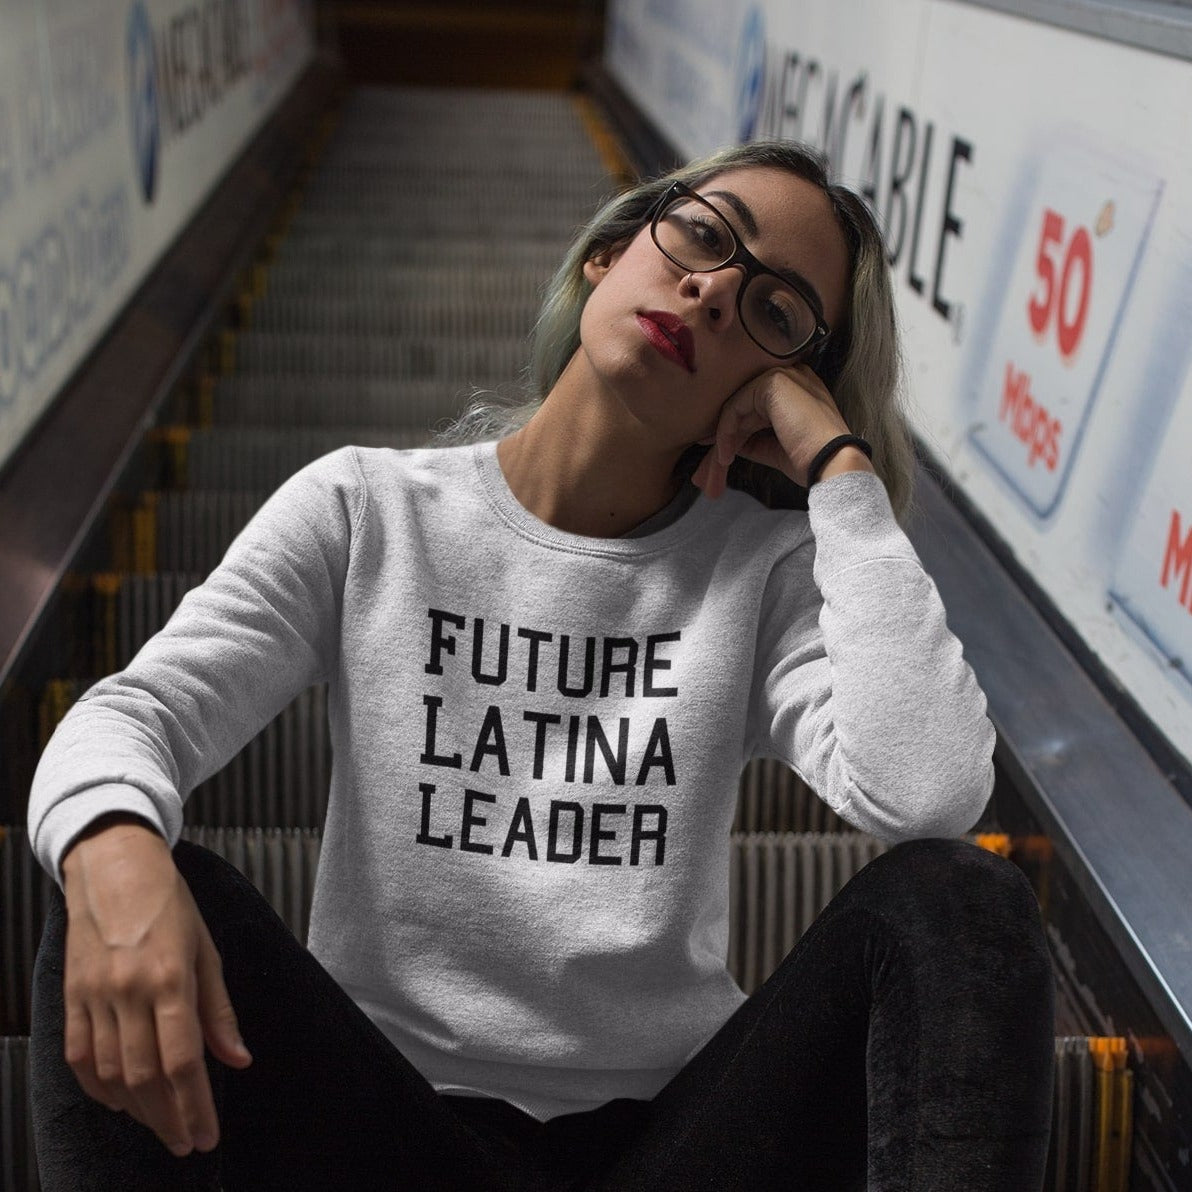 Future Latina/o Sweatshirt